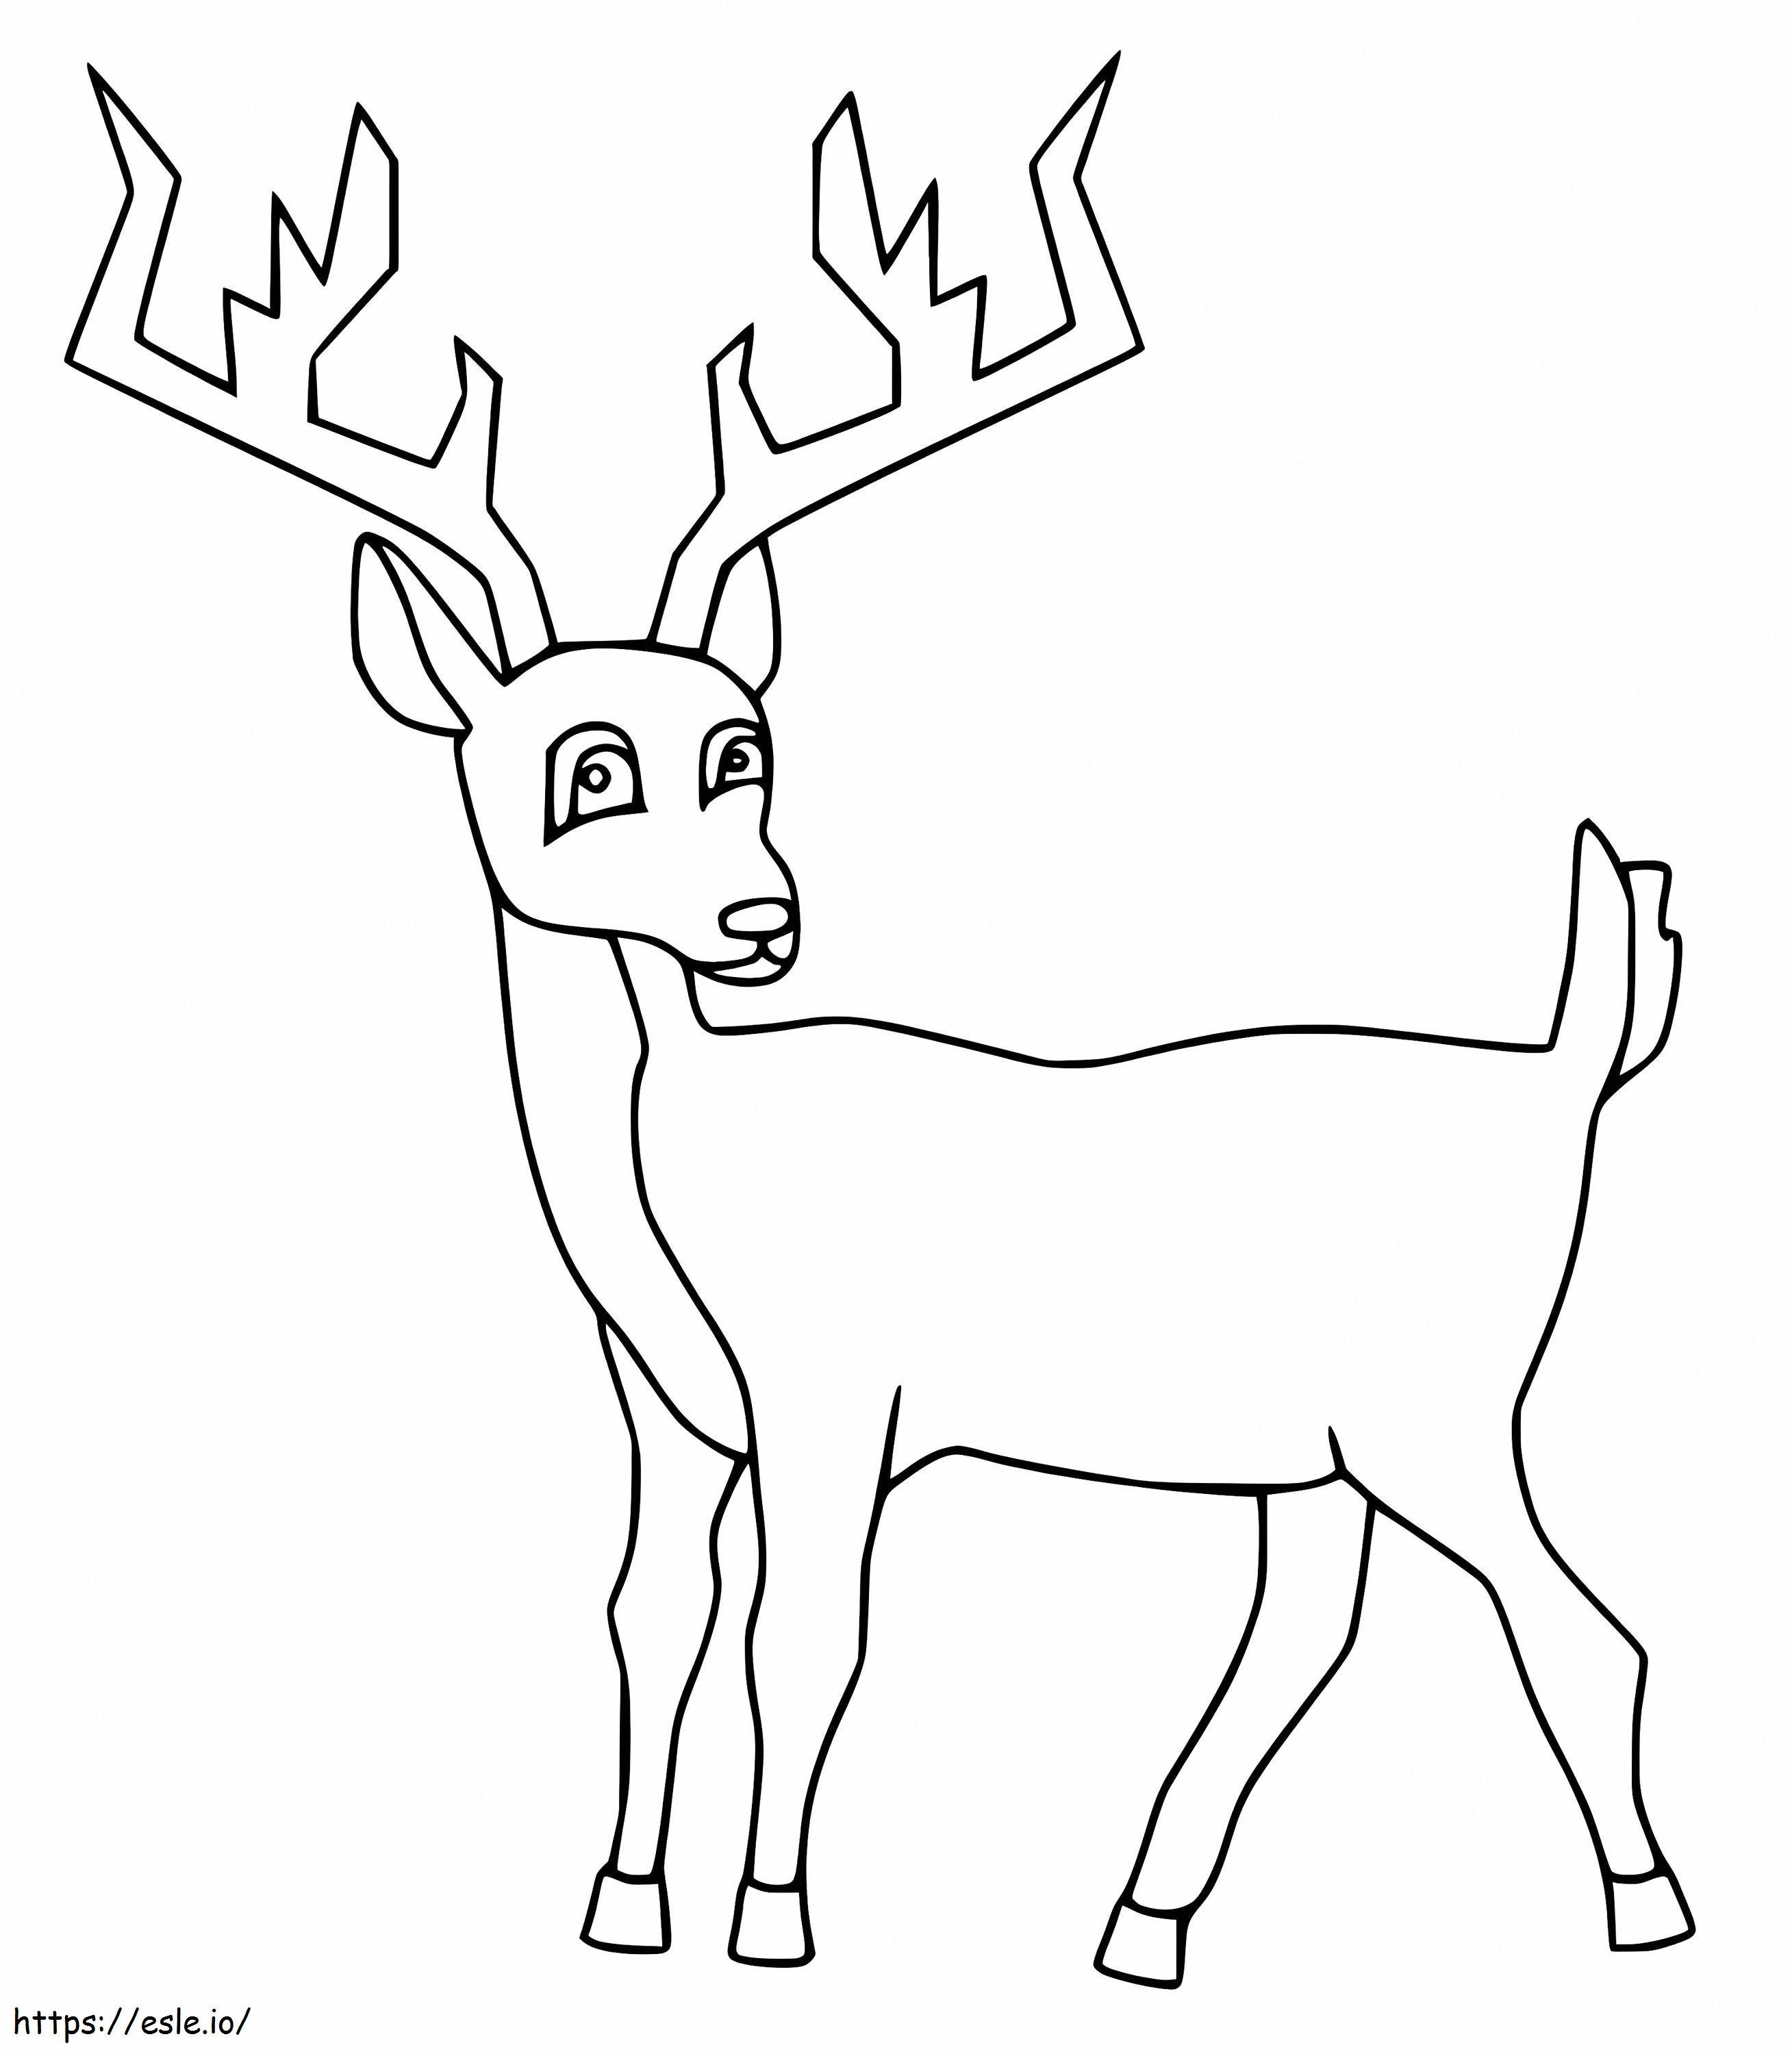 Red Deer Is Cute coloring page